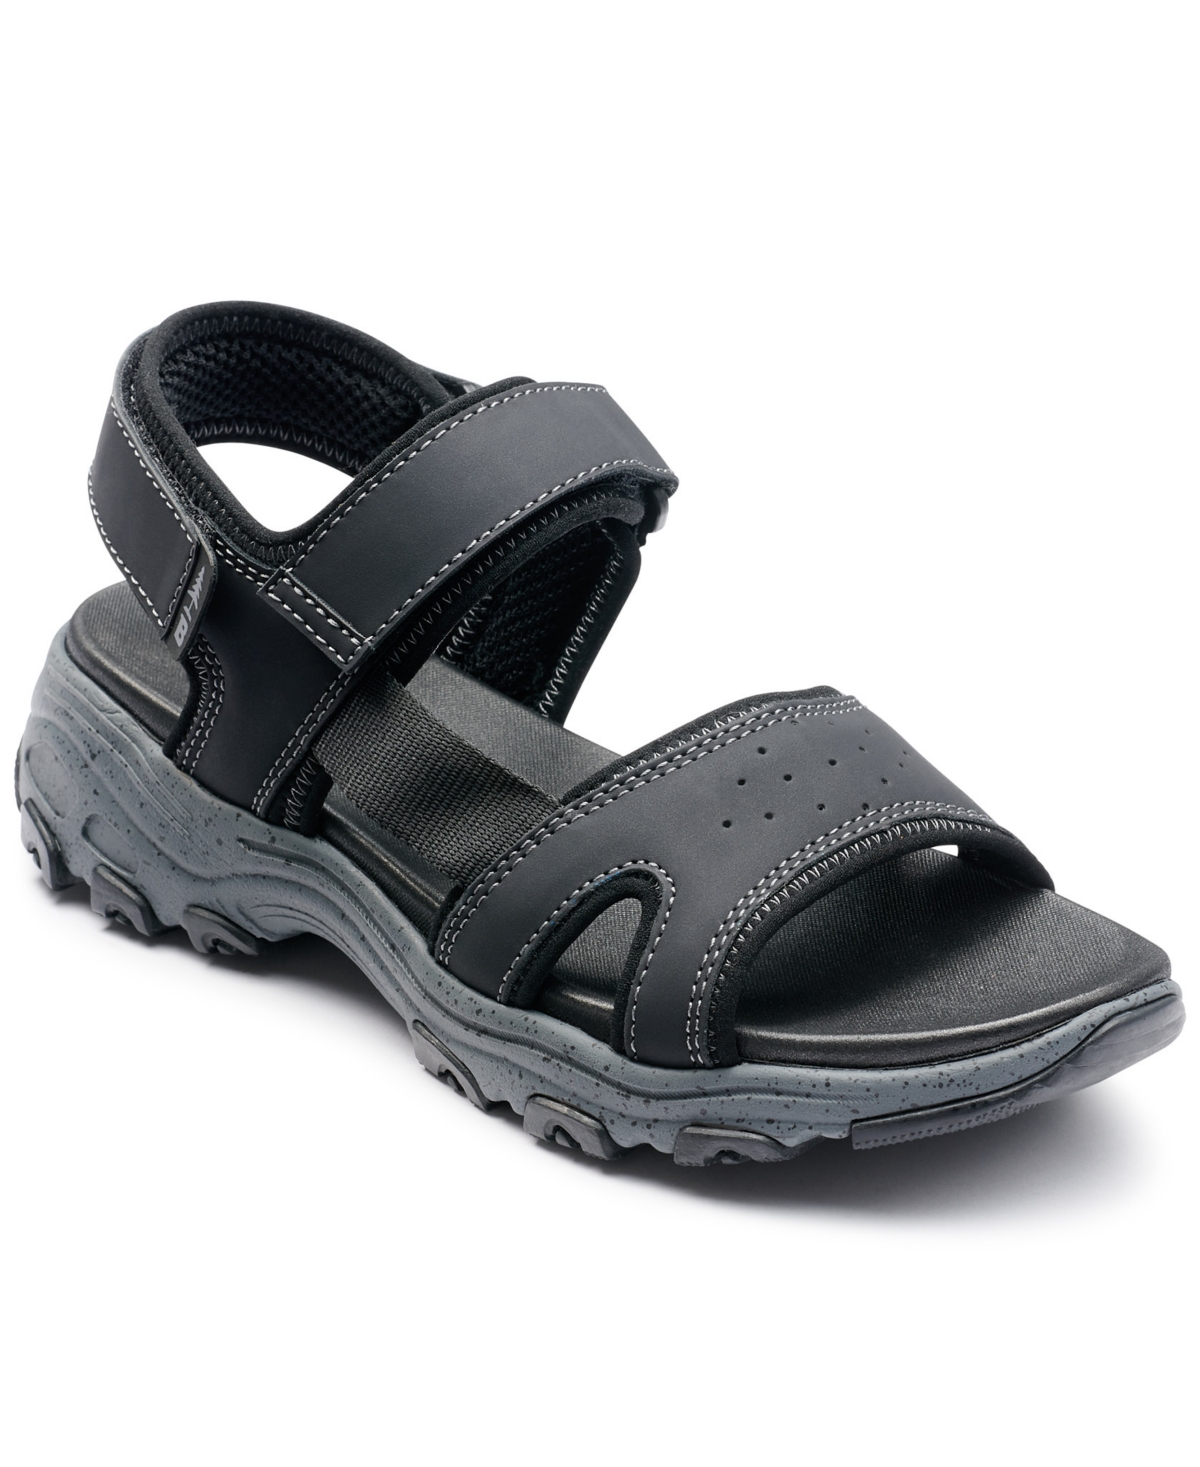 Men's Trail Sandal Hiking Shoe - Black